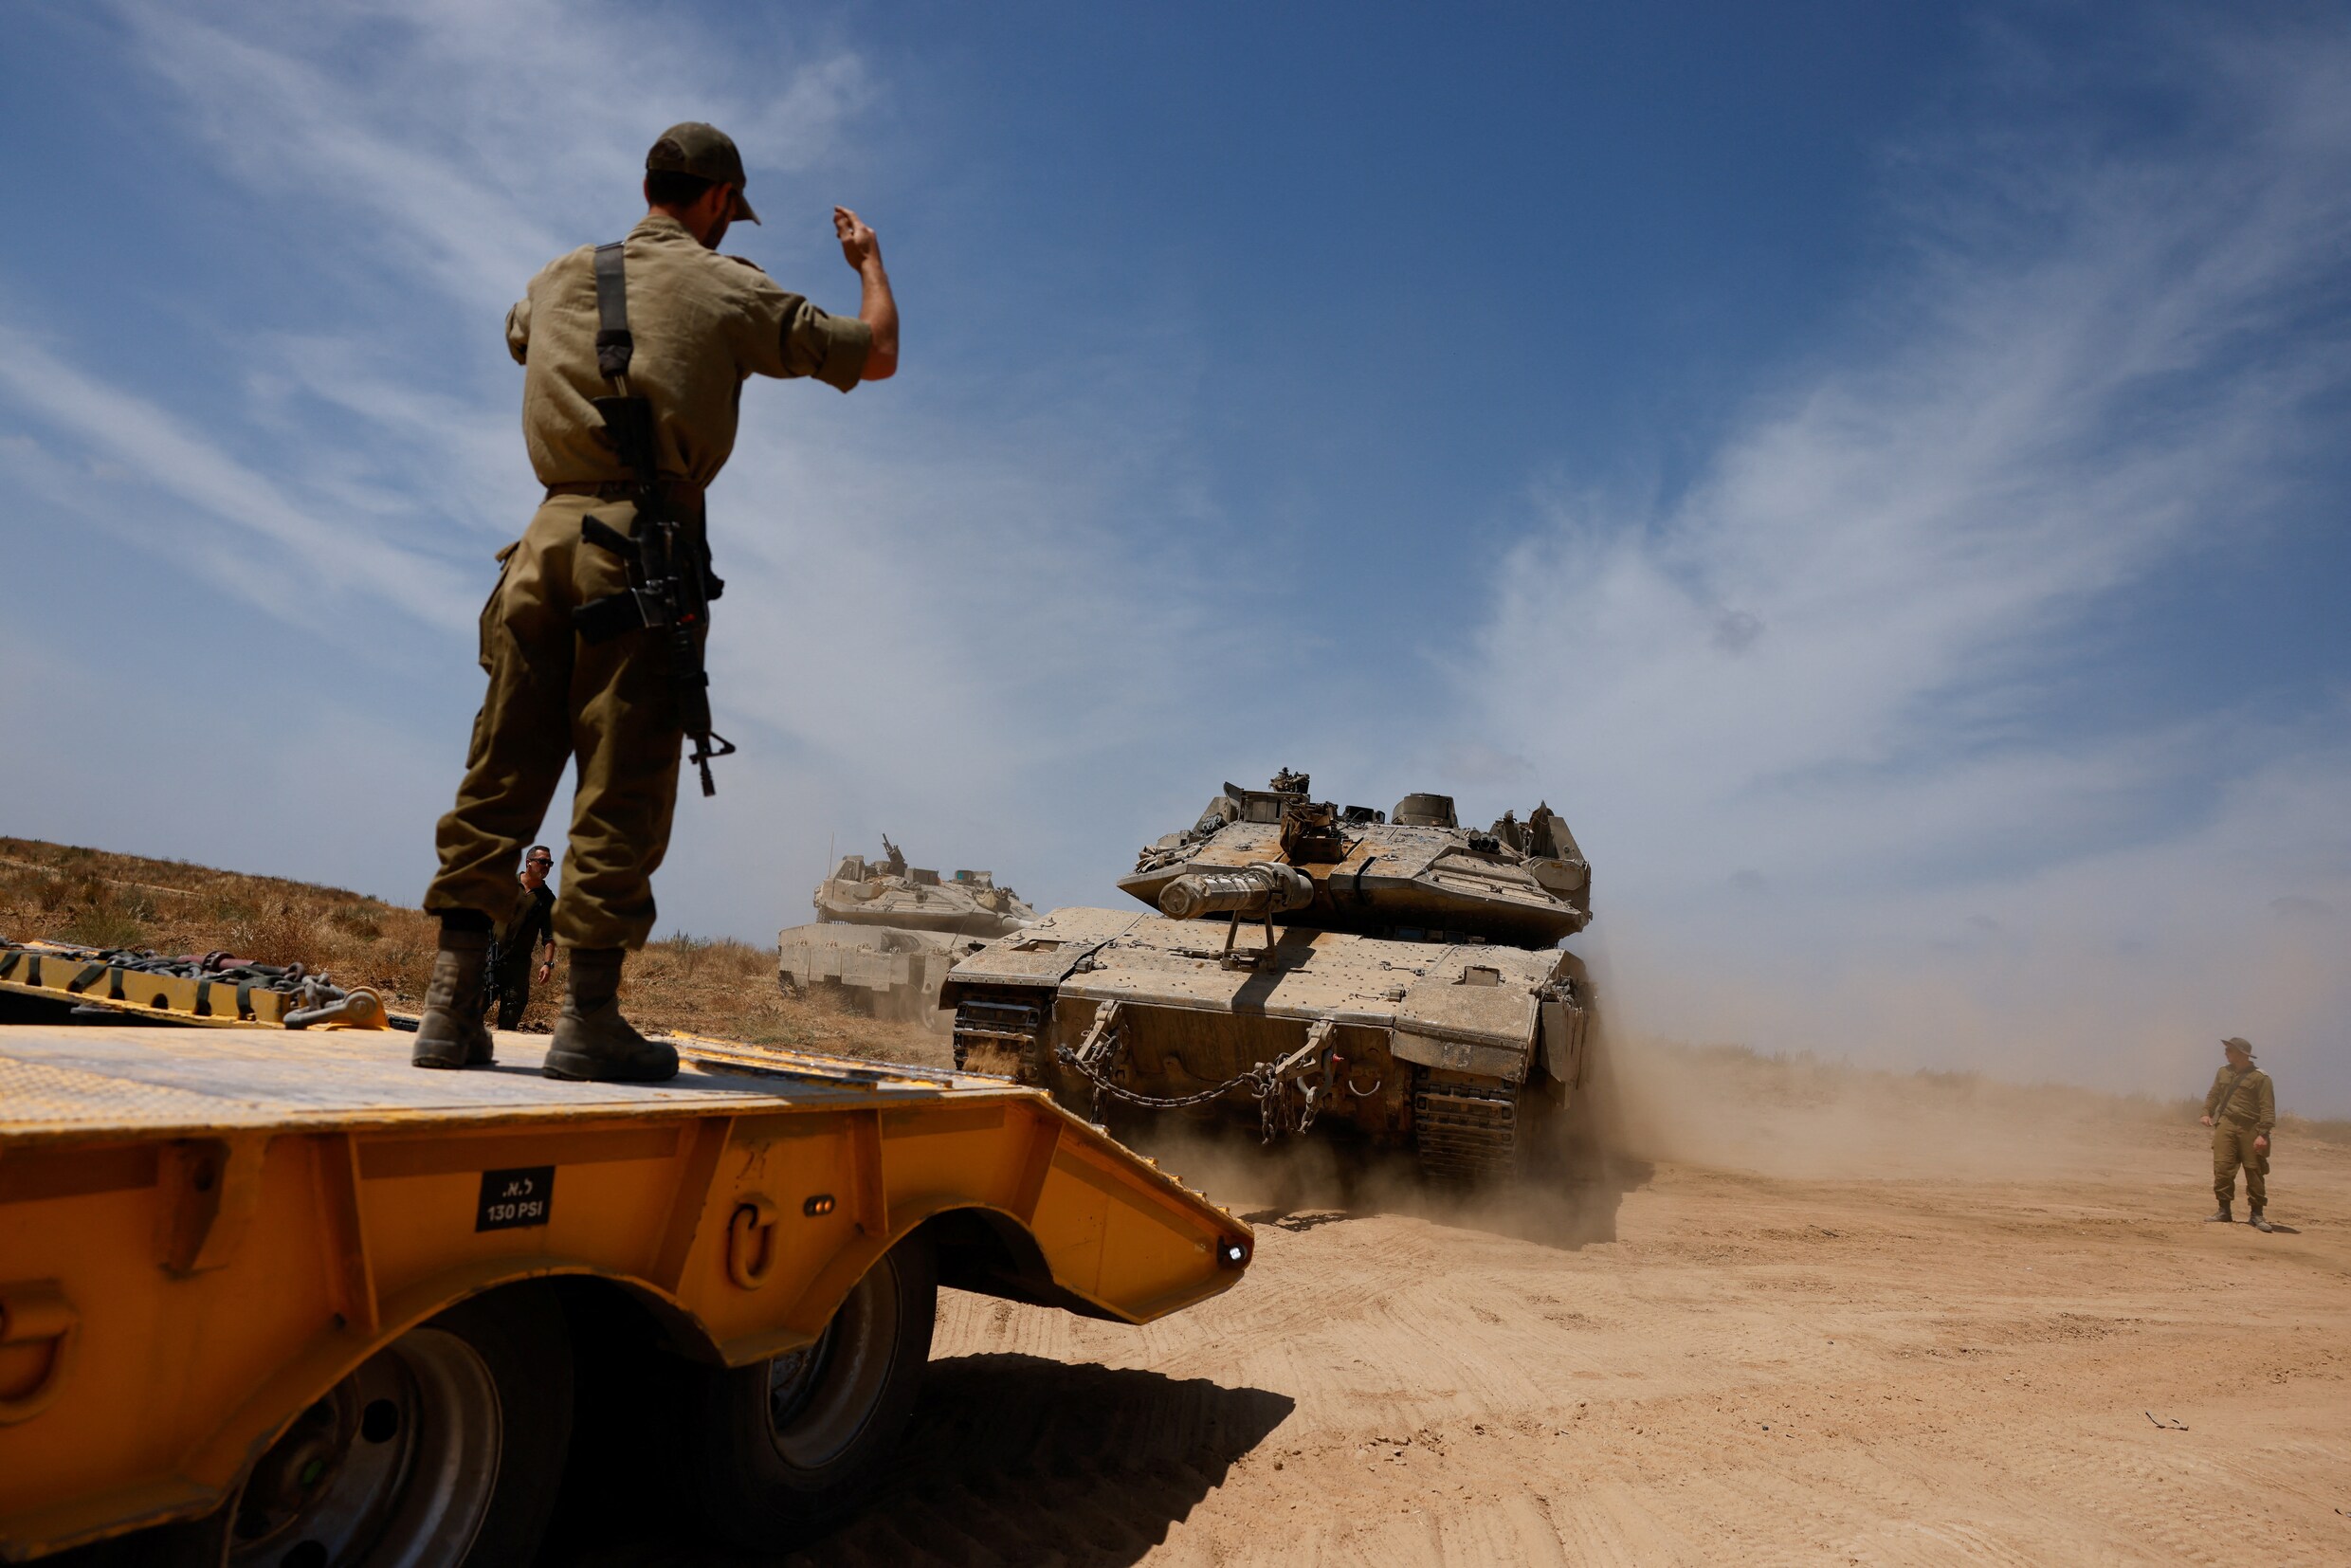 Live - Crisis Midden-Oosten. Vervolg van onderhandelingen tussen Hamas en Israël verwacht, maar kans op doorbraak lijkt kleiner